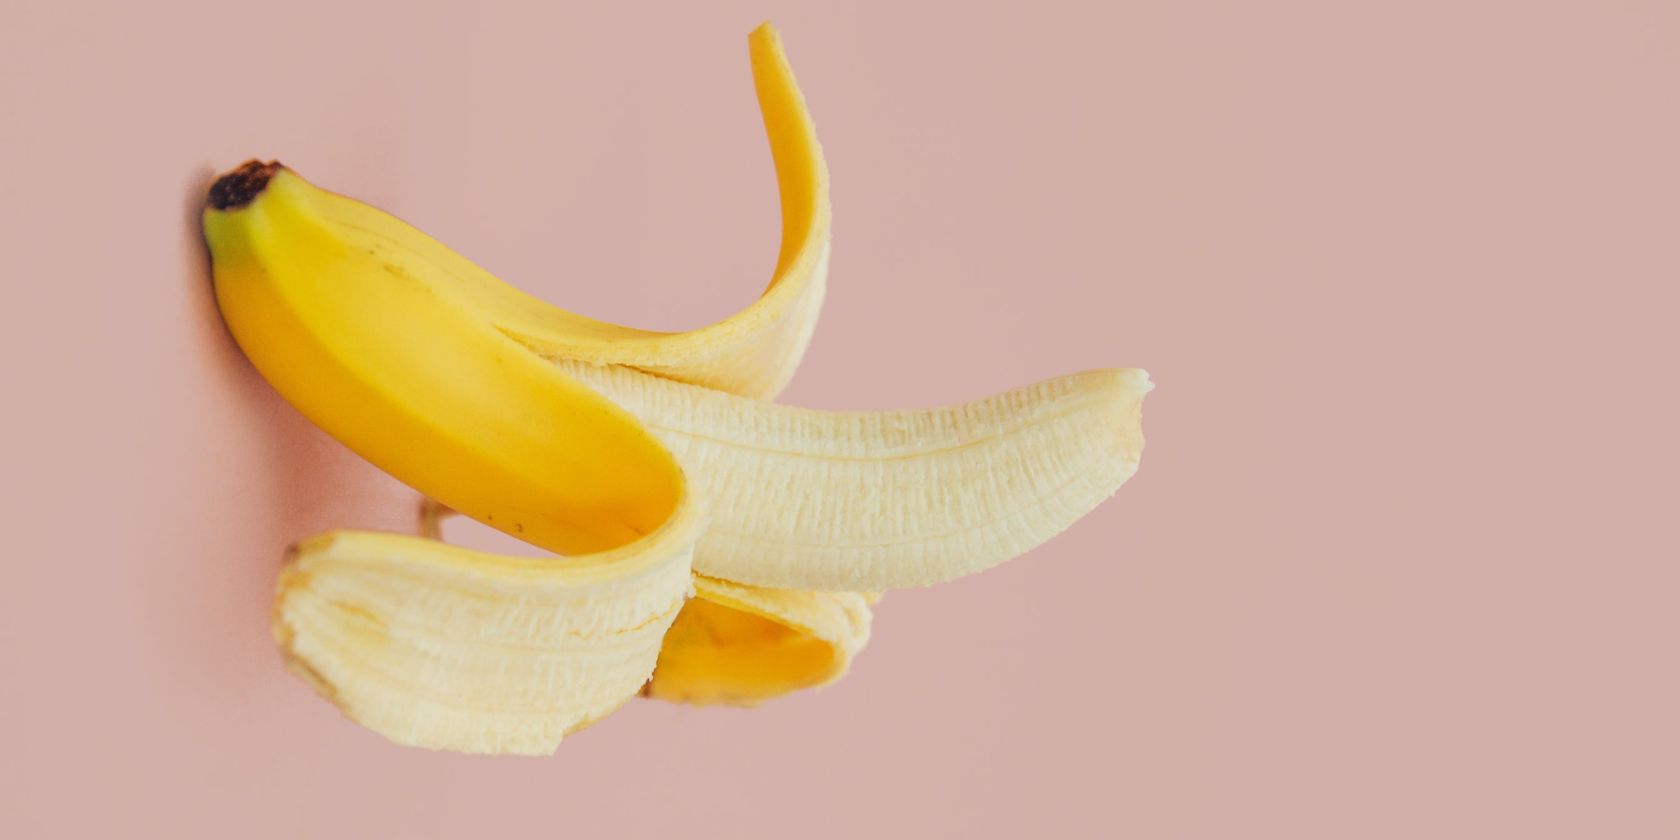 a partially peeled banana